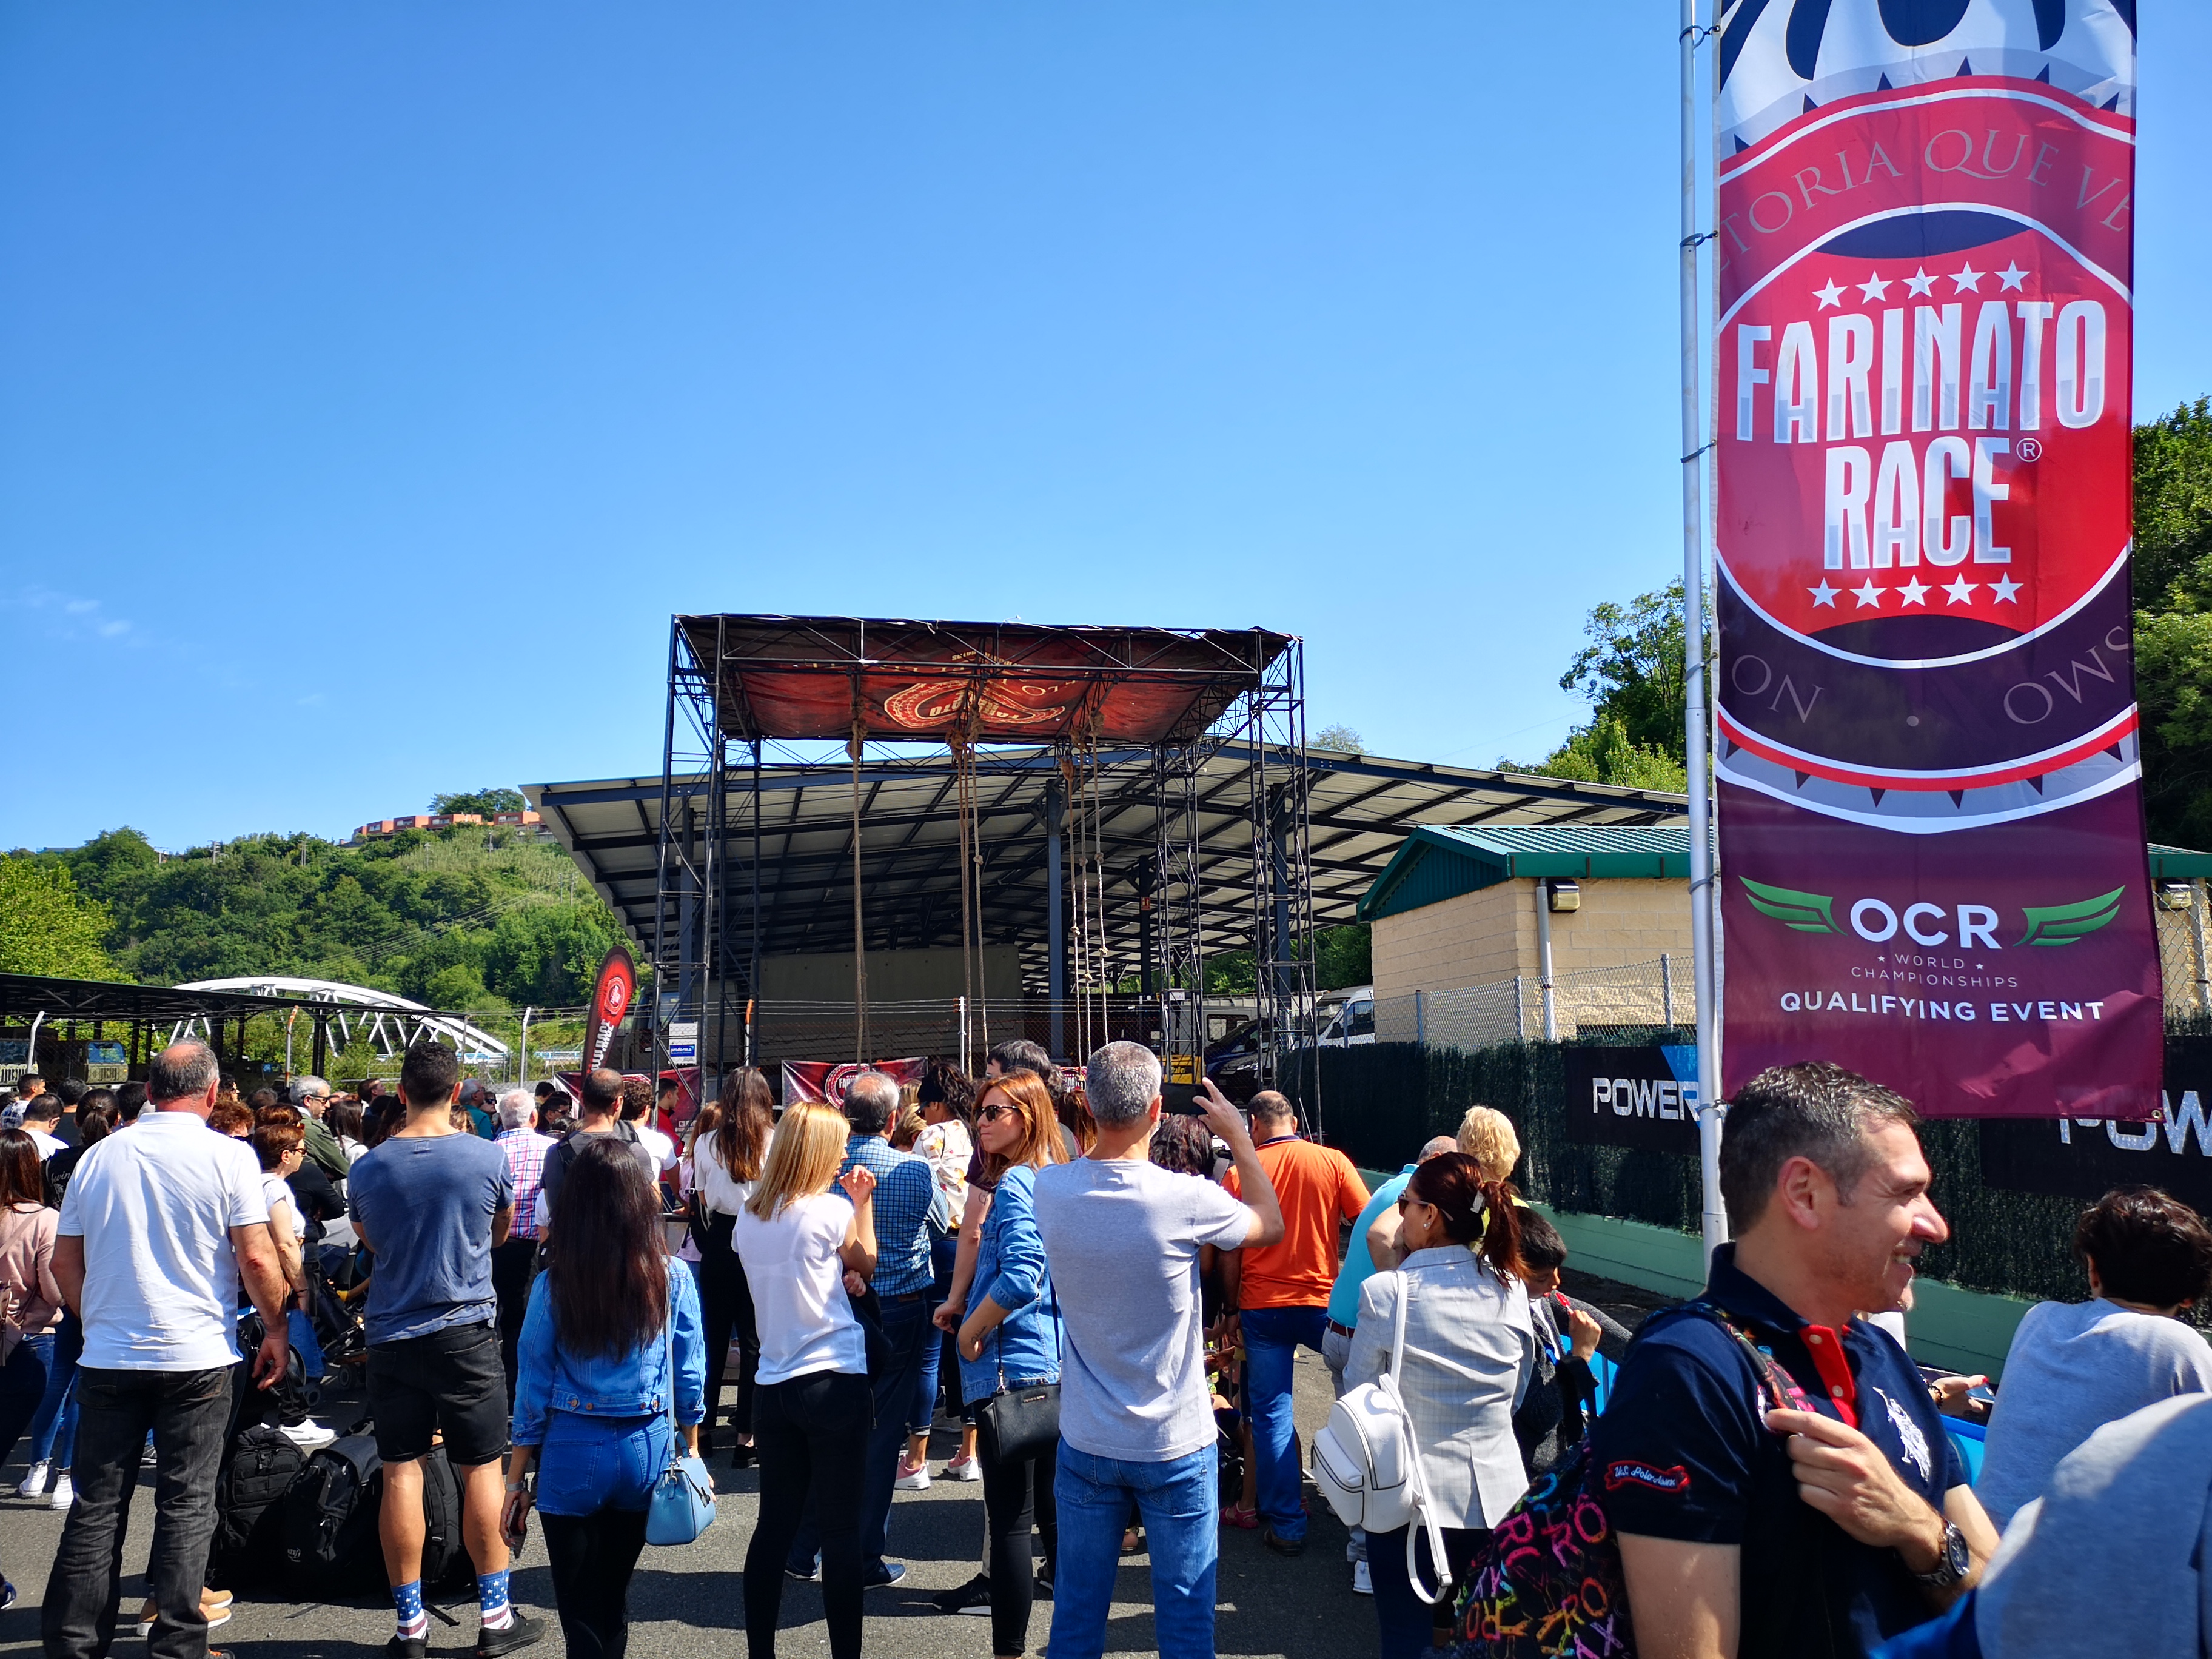 Farinato Race 2019